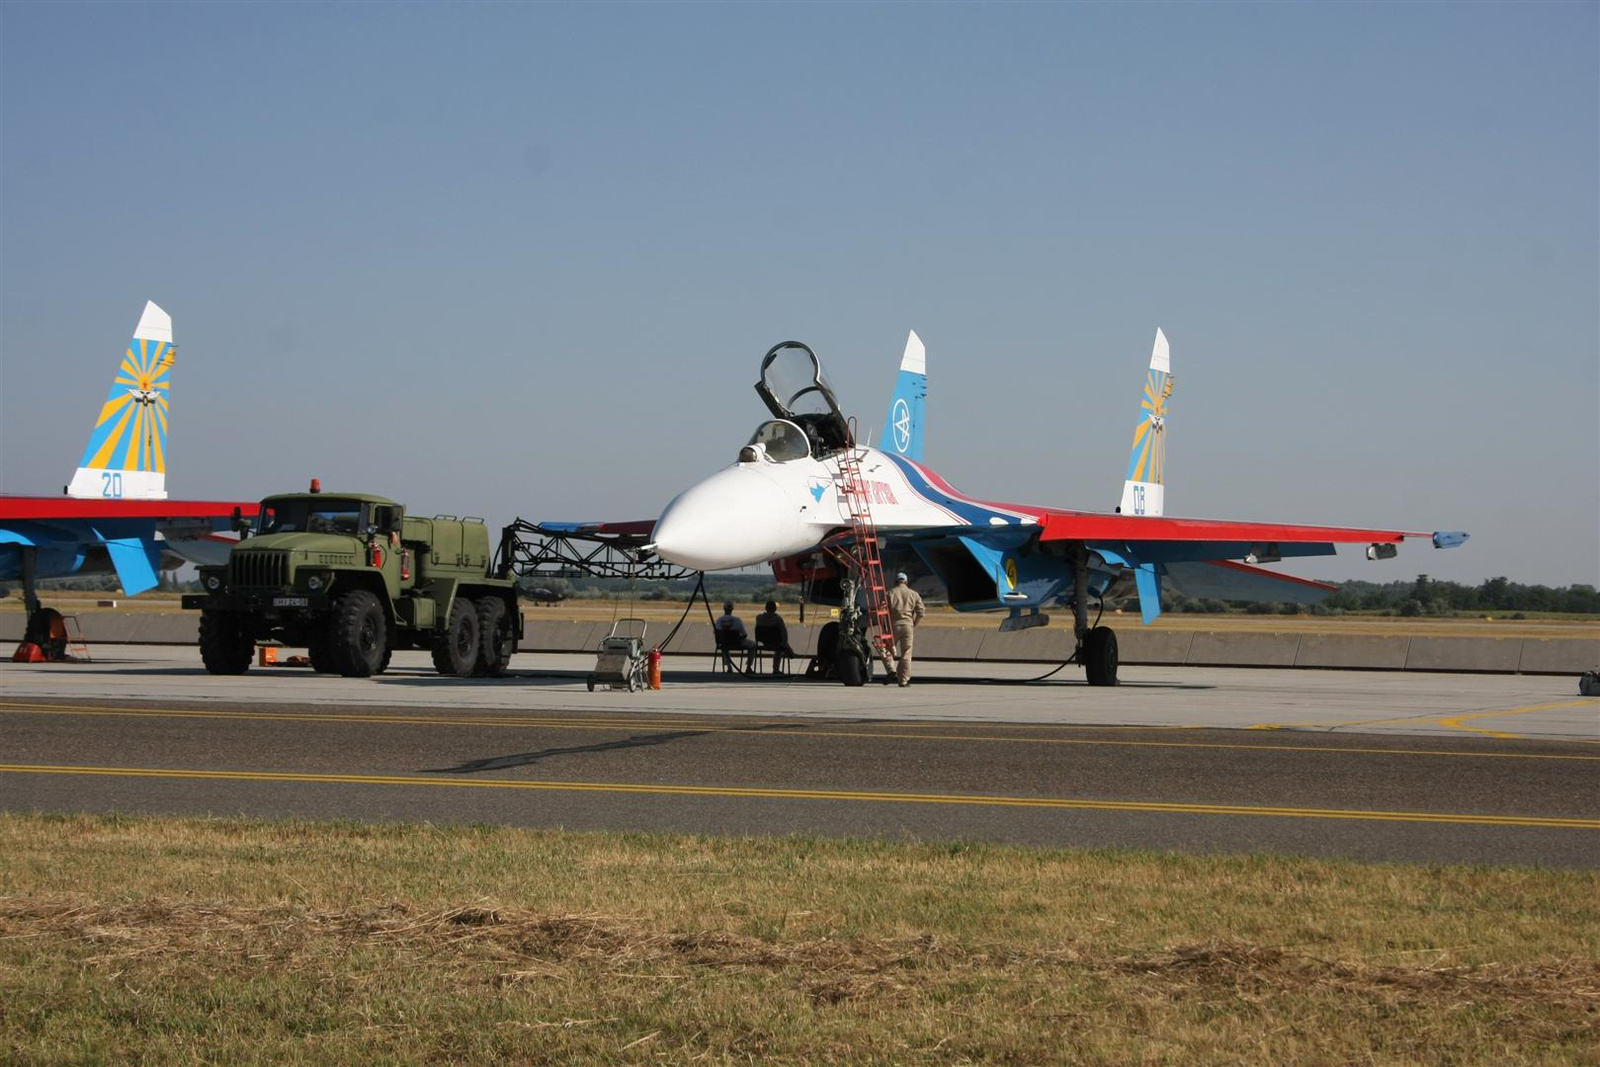 Kecskemét repülőnap 2013 - Orosz lovagok - SZU-27P / APA-5D